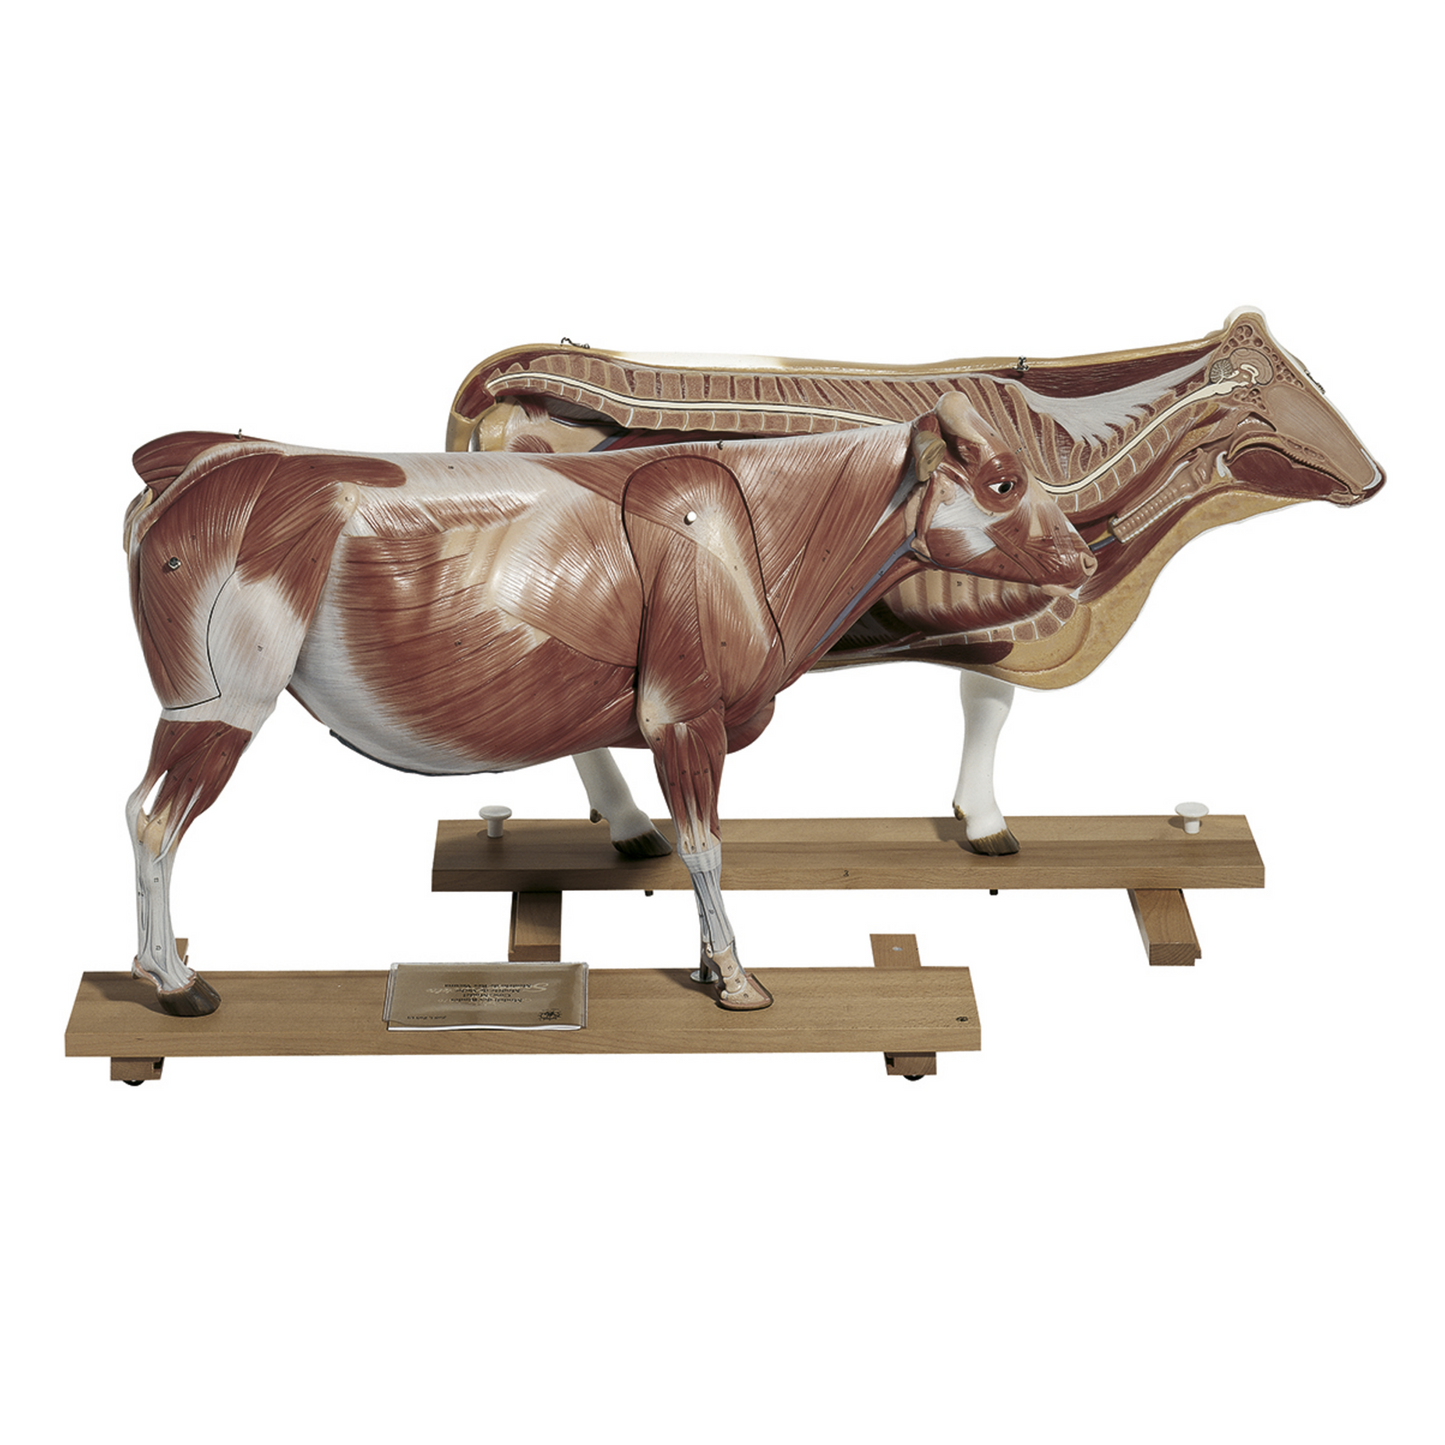 Modell av en ko i högsta kvalitet och 1/3 av naturlig storlek. Kan delas upp i 13 delar